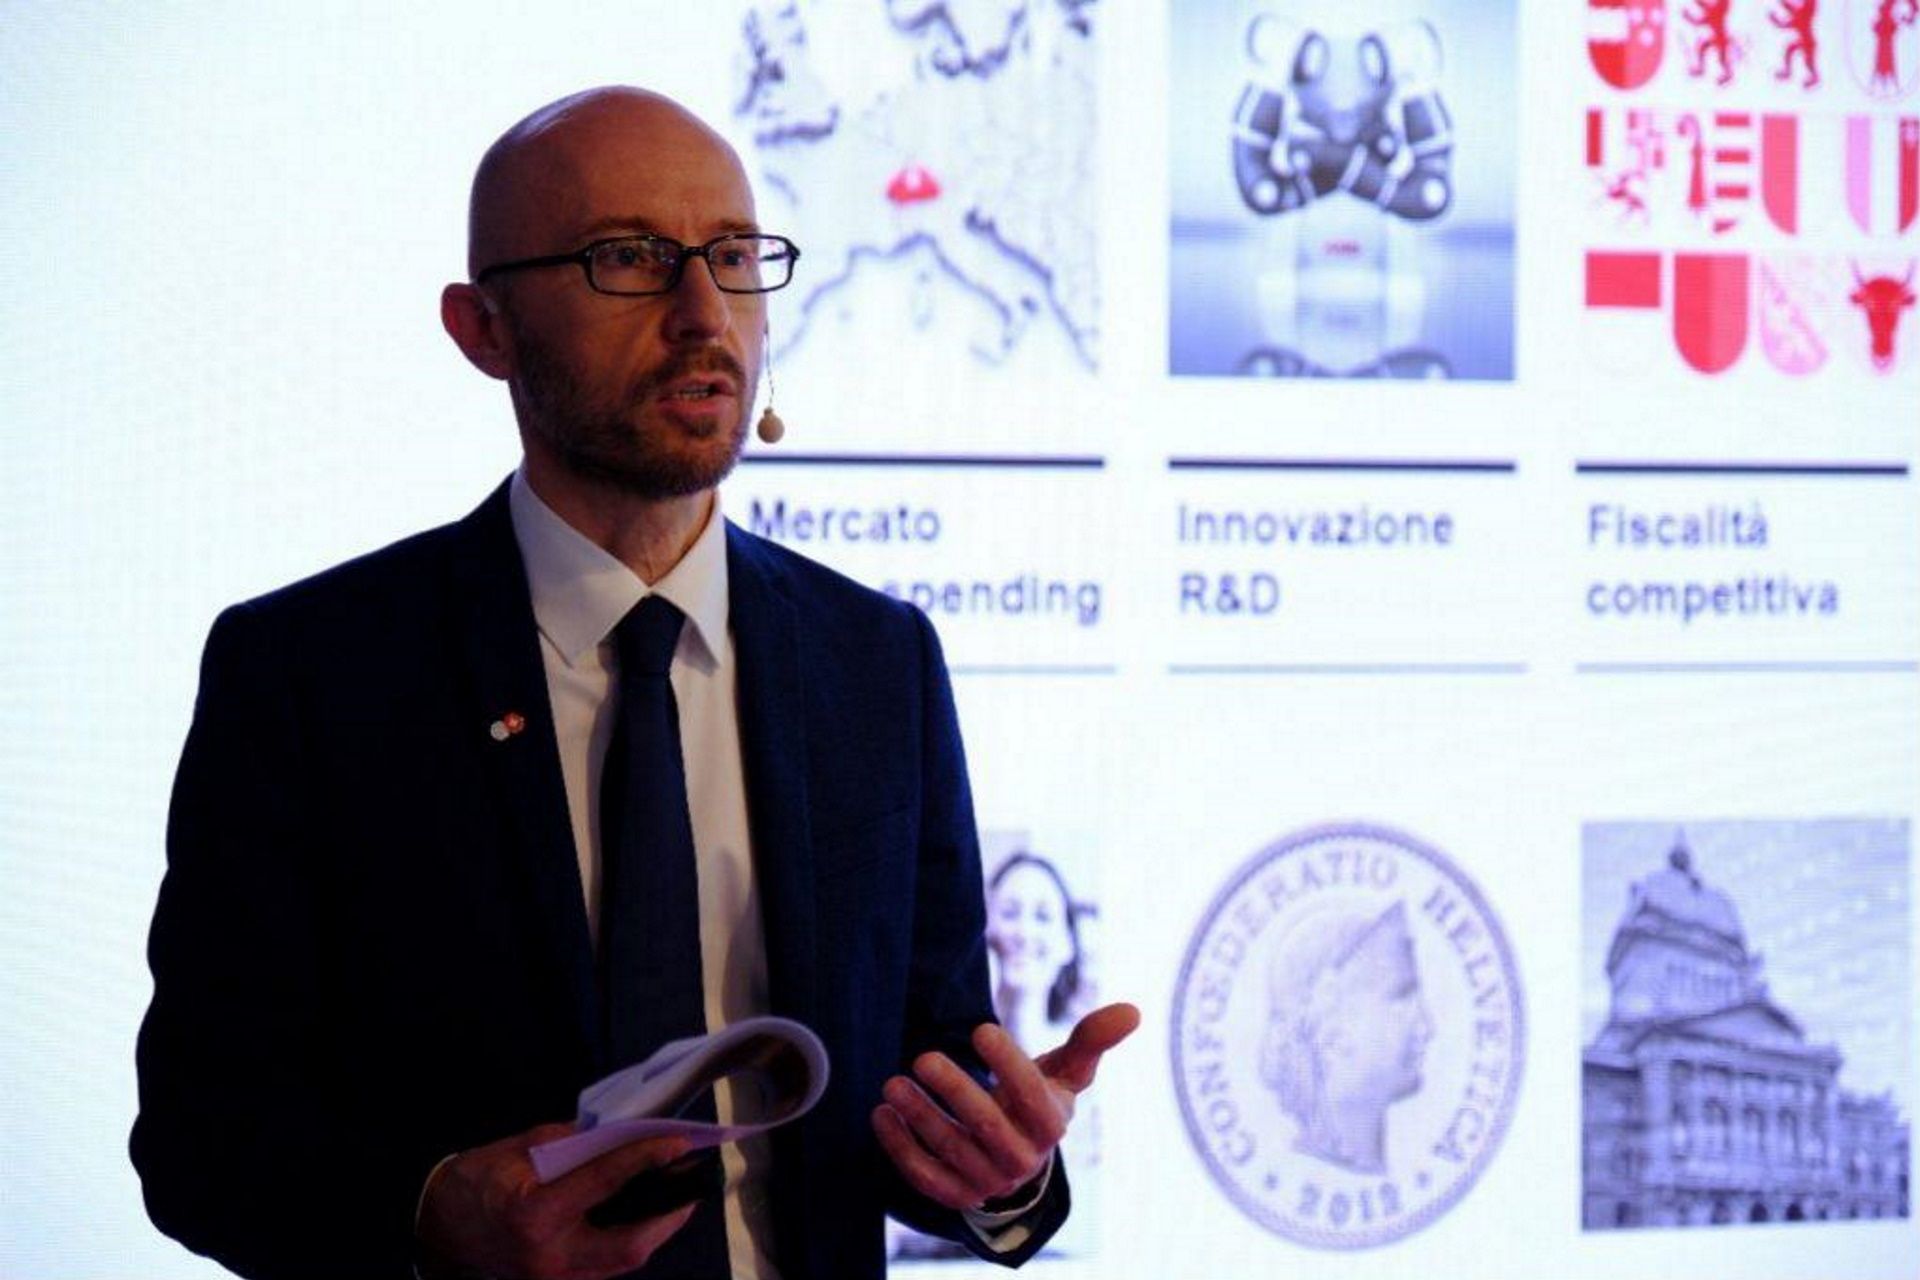 Stefan Zwicky is Head of Swiss Business Hub Italy